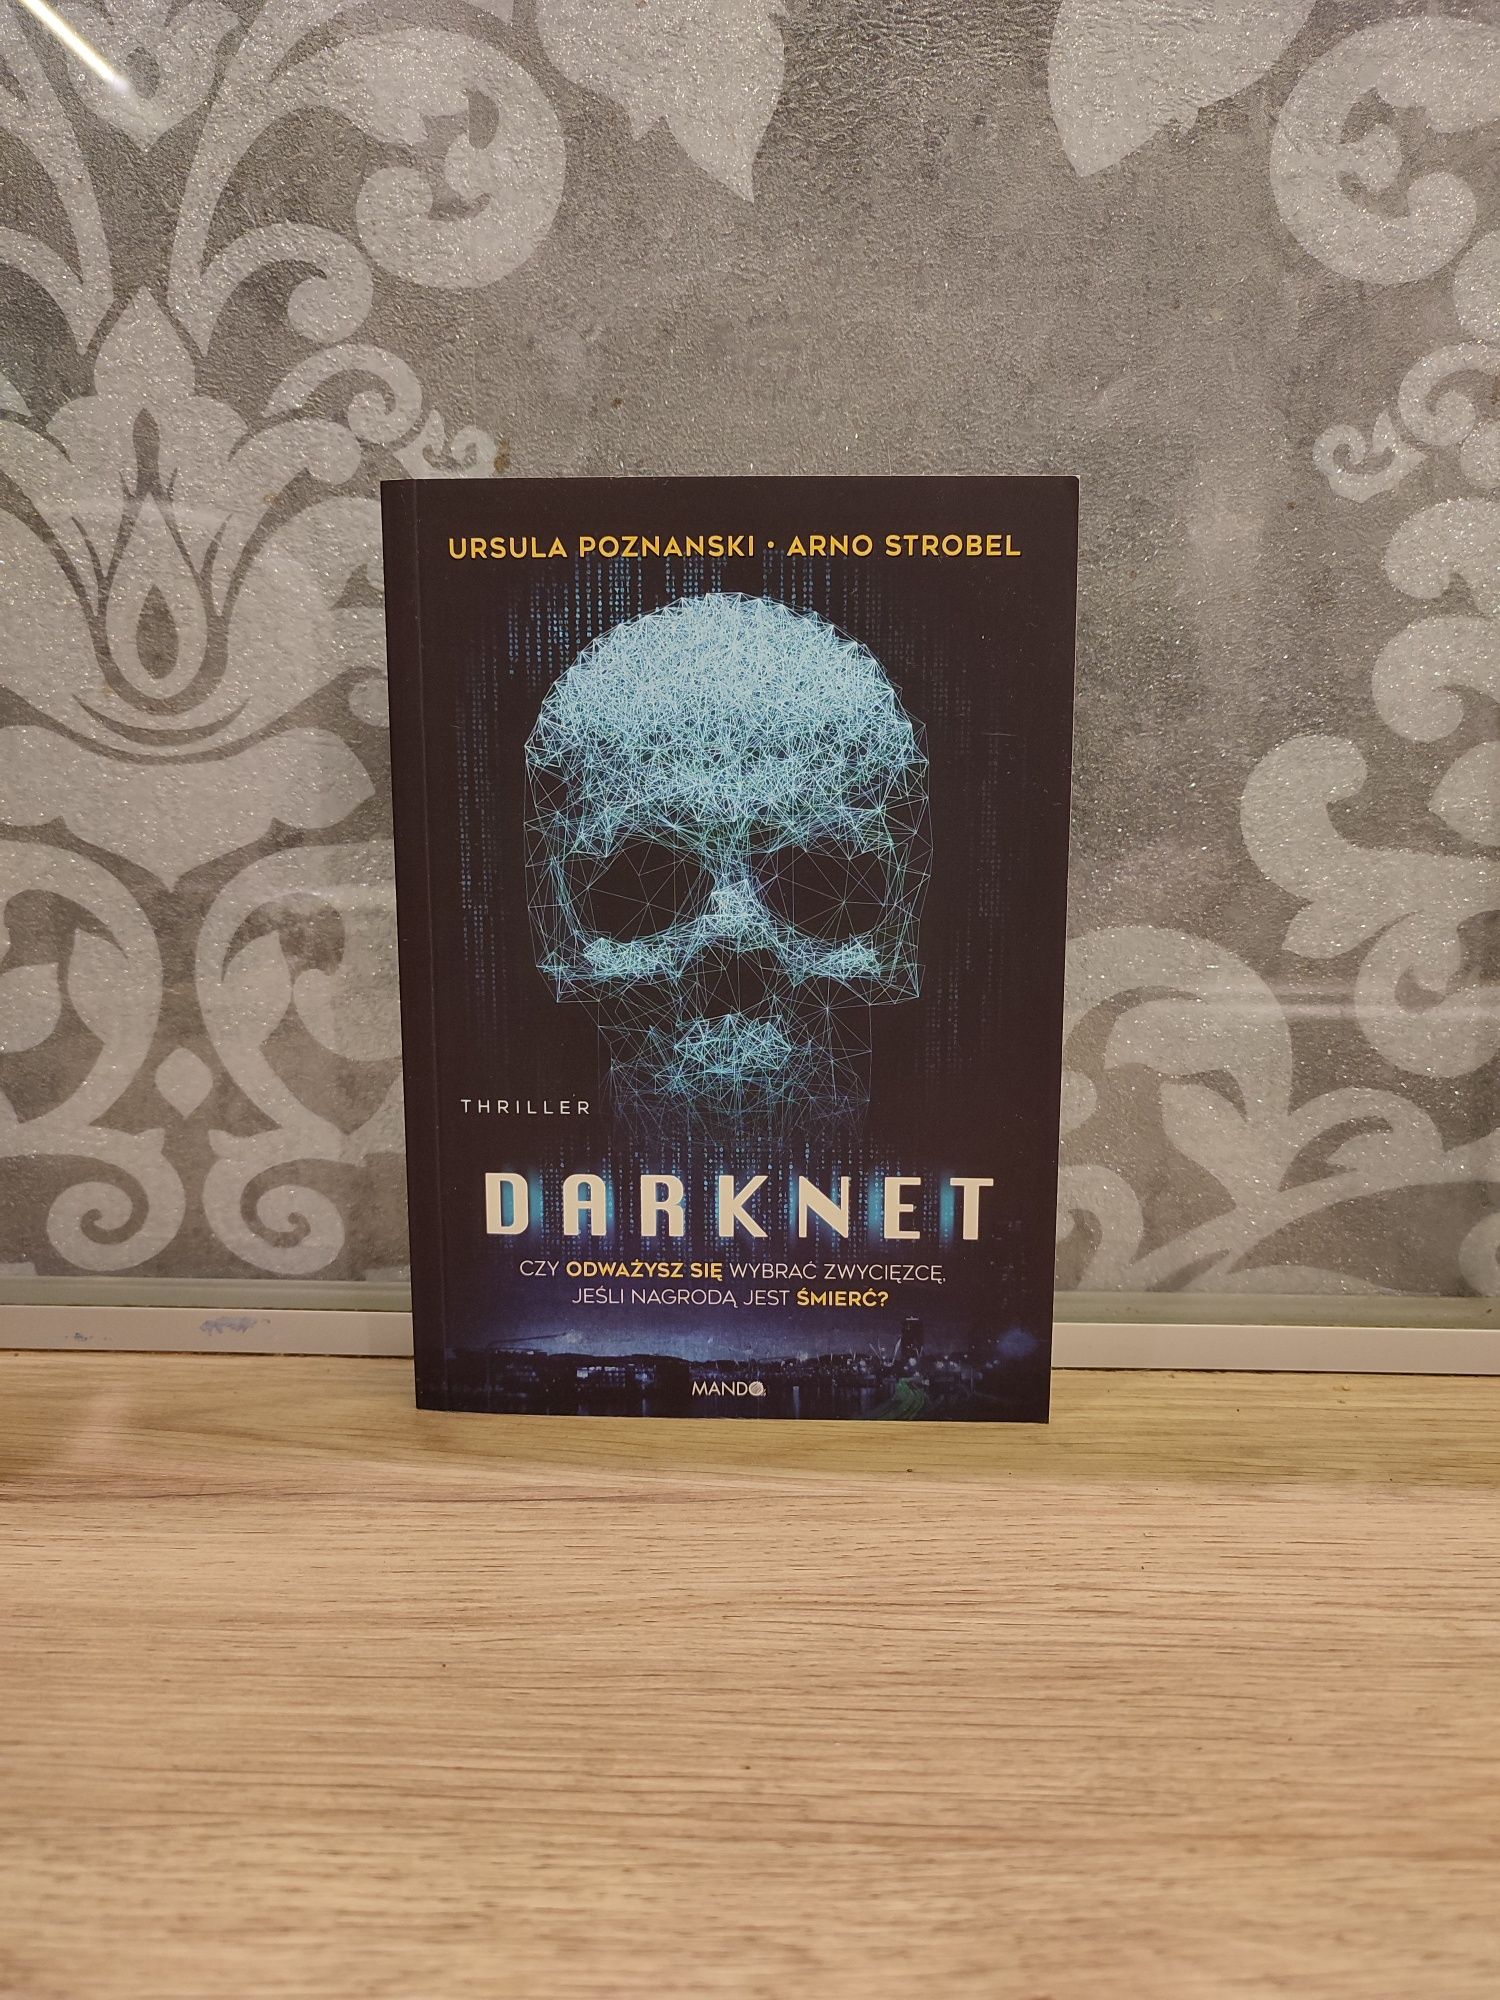 Darknet Ursula Poznanski Arno Strobel - Wciągający thriller - Internet